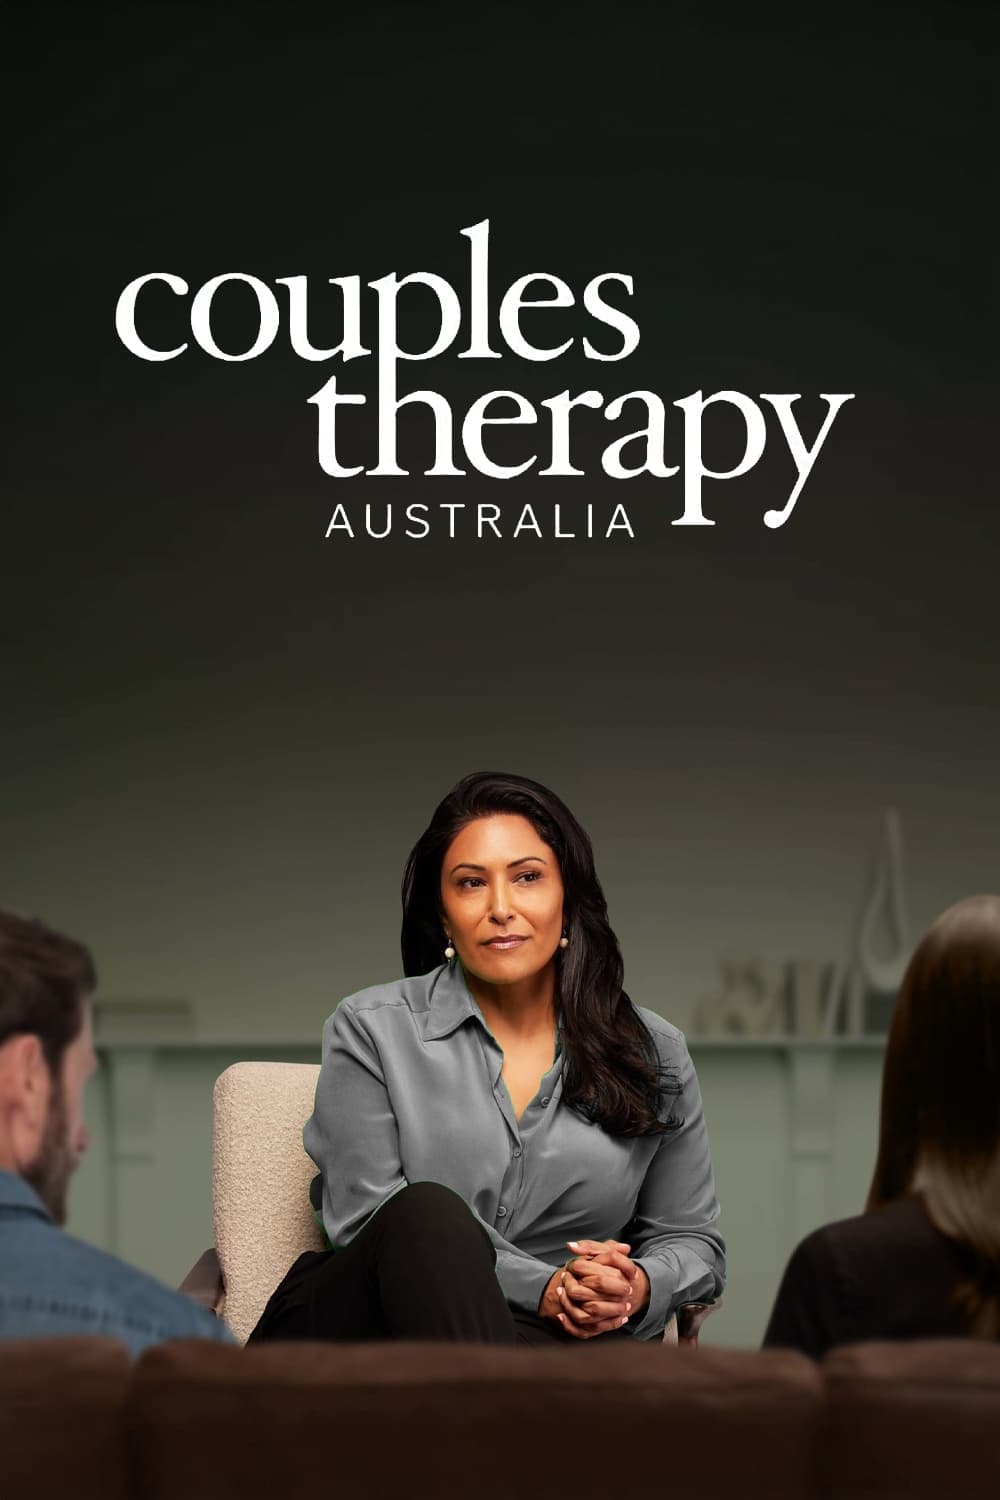 Couples Therapy Australia